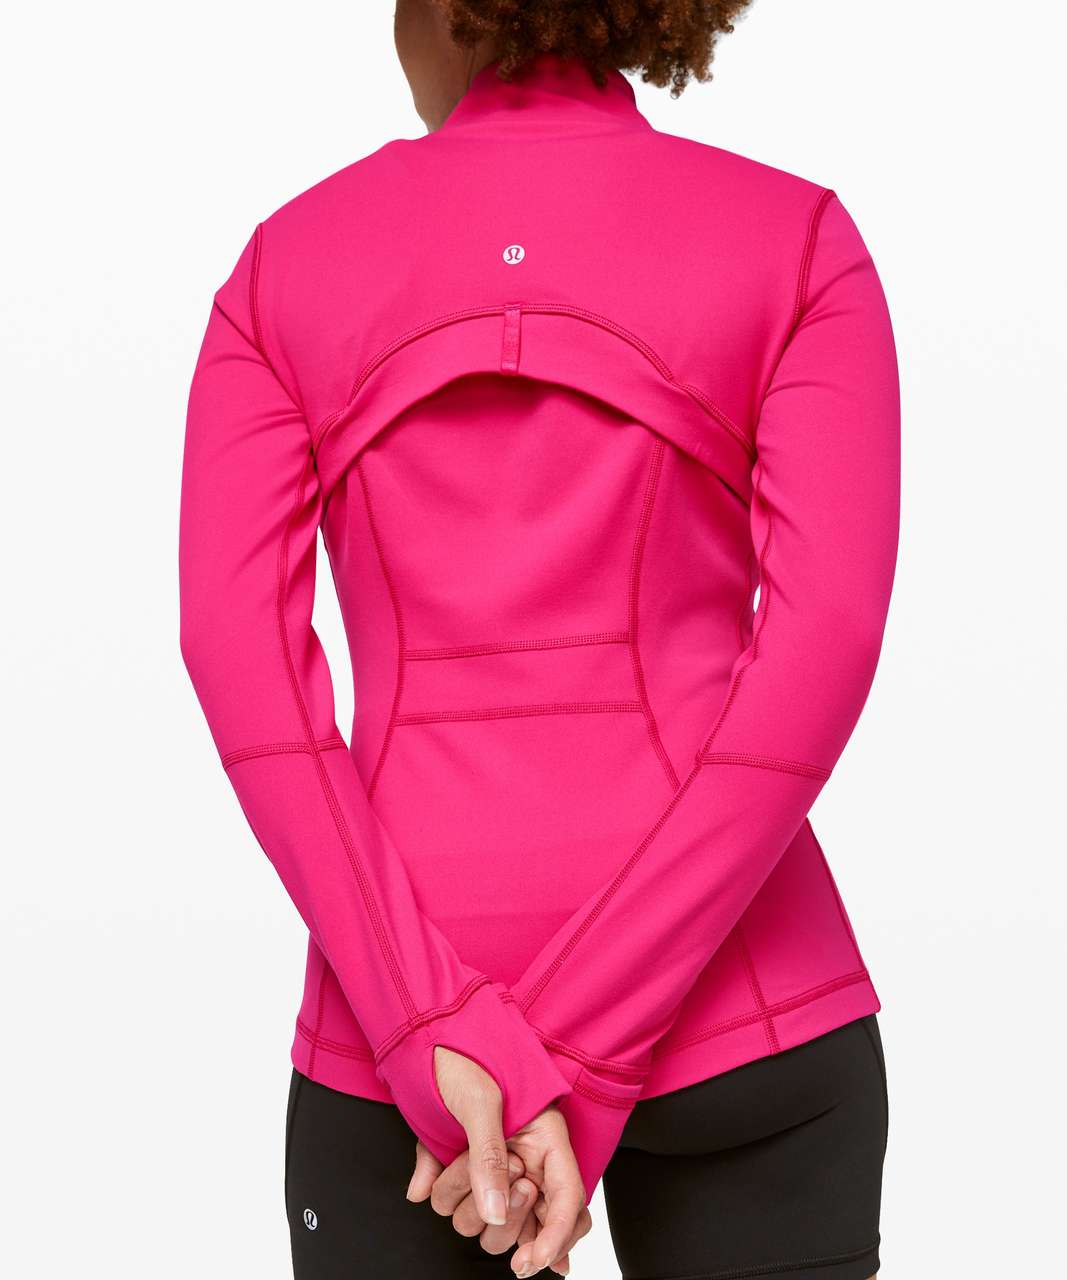 NWT Lululemon Define Jacket *Luon Pink Peony Size 4 - LW4AWKS PKPI